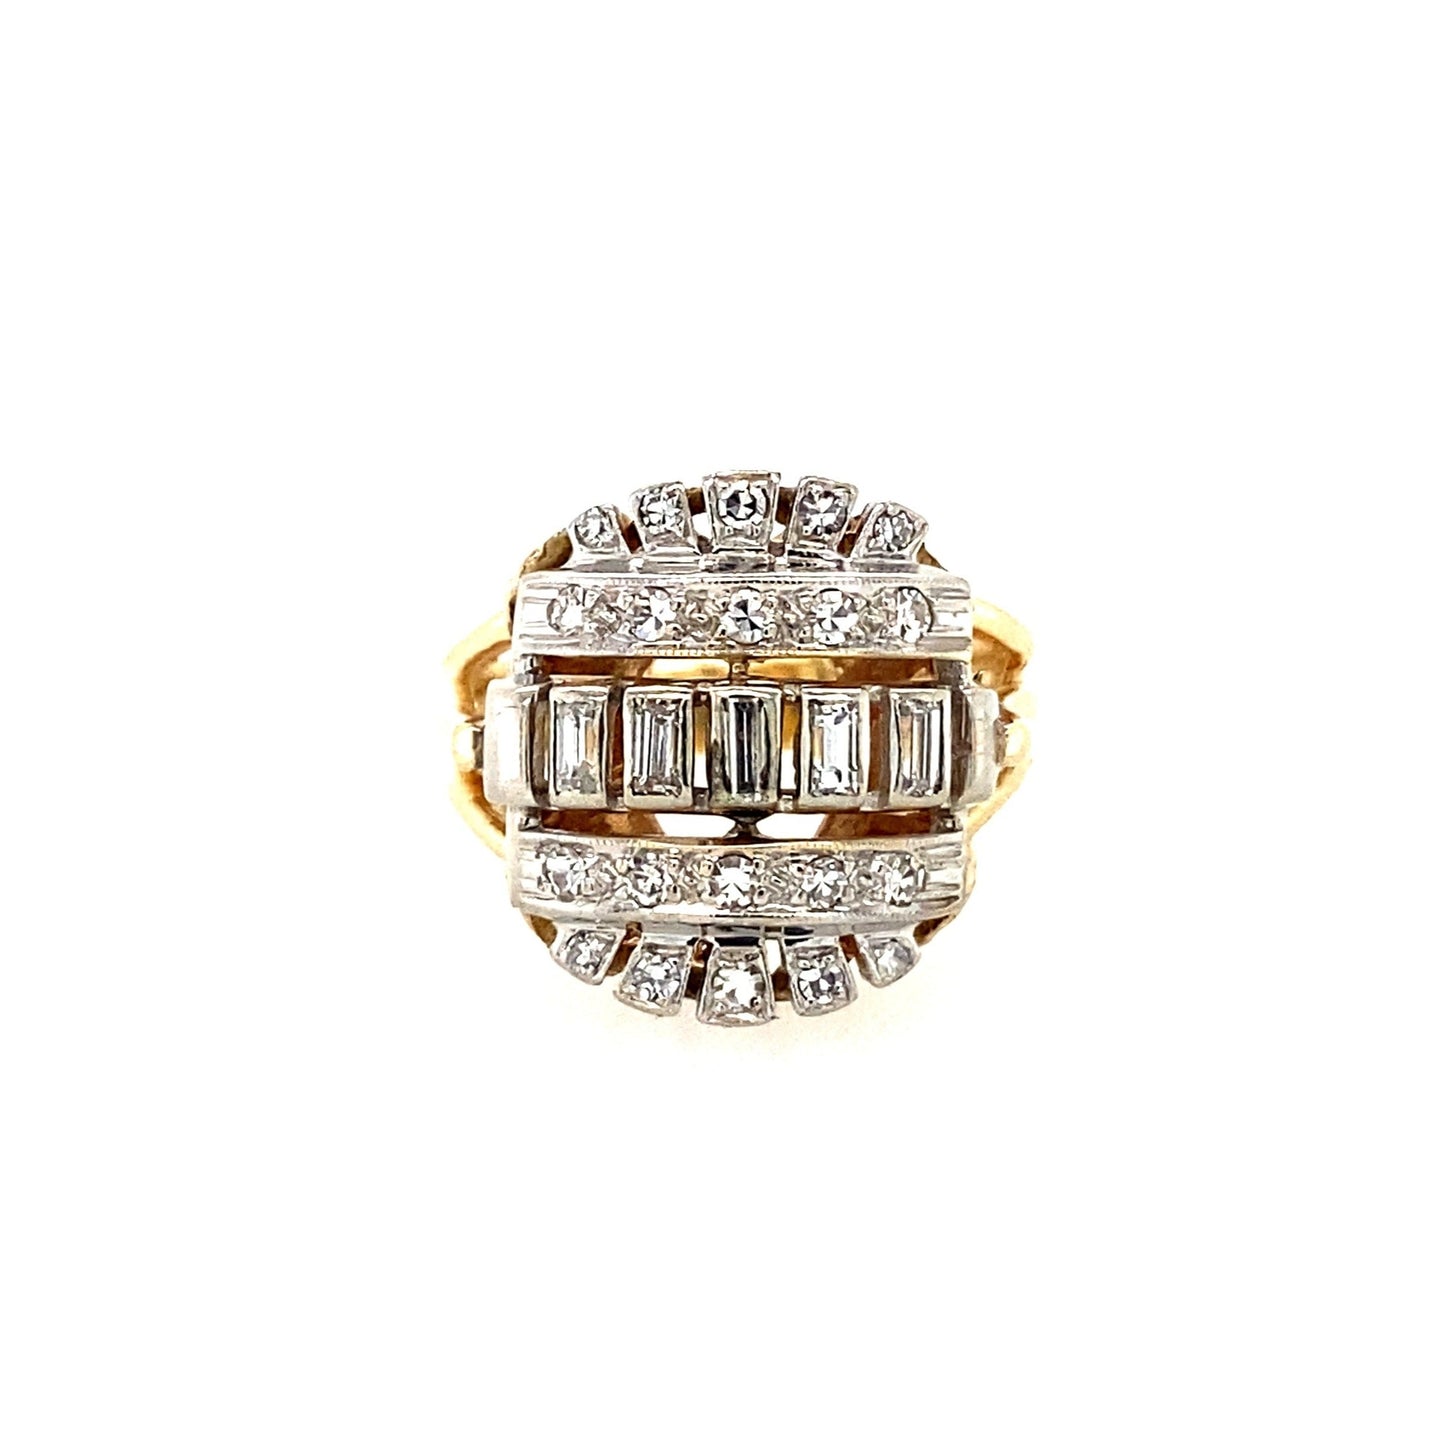 Vintage Diamond Ring Circa 1960's in 14K